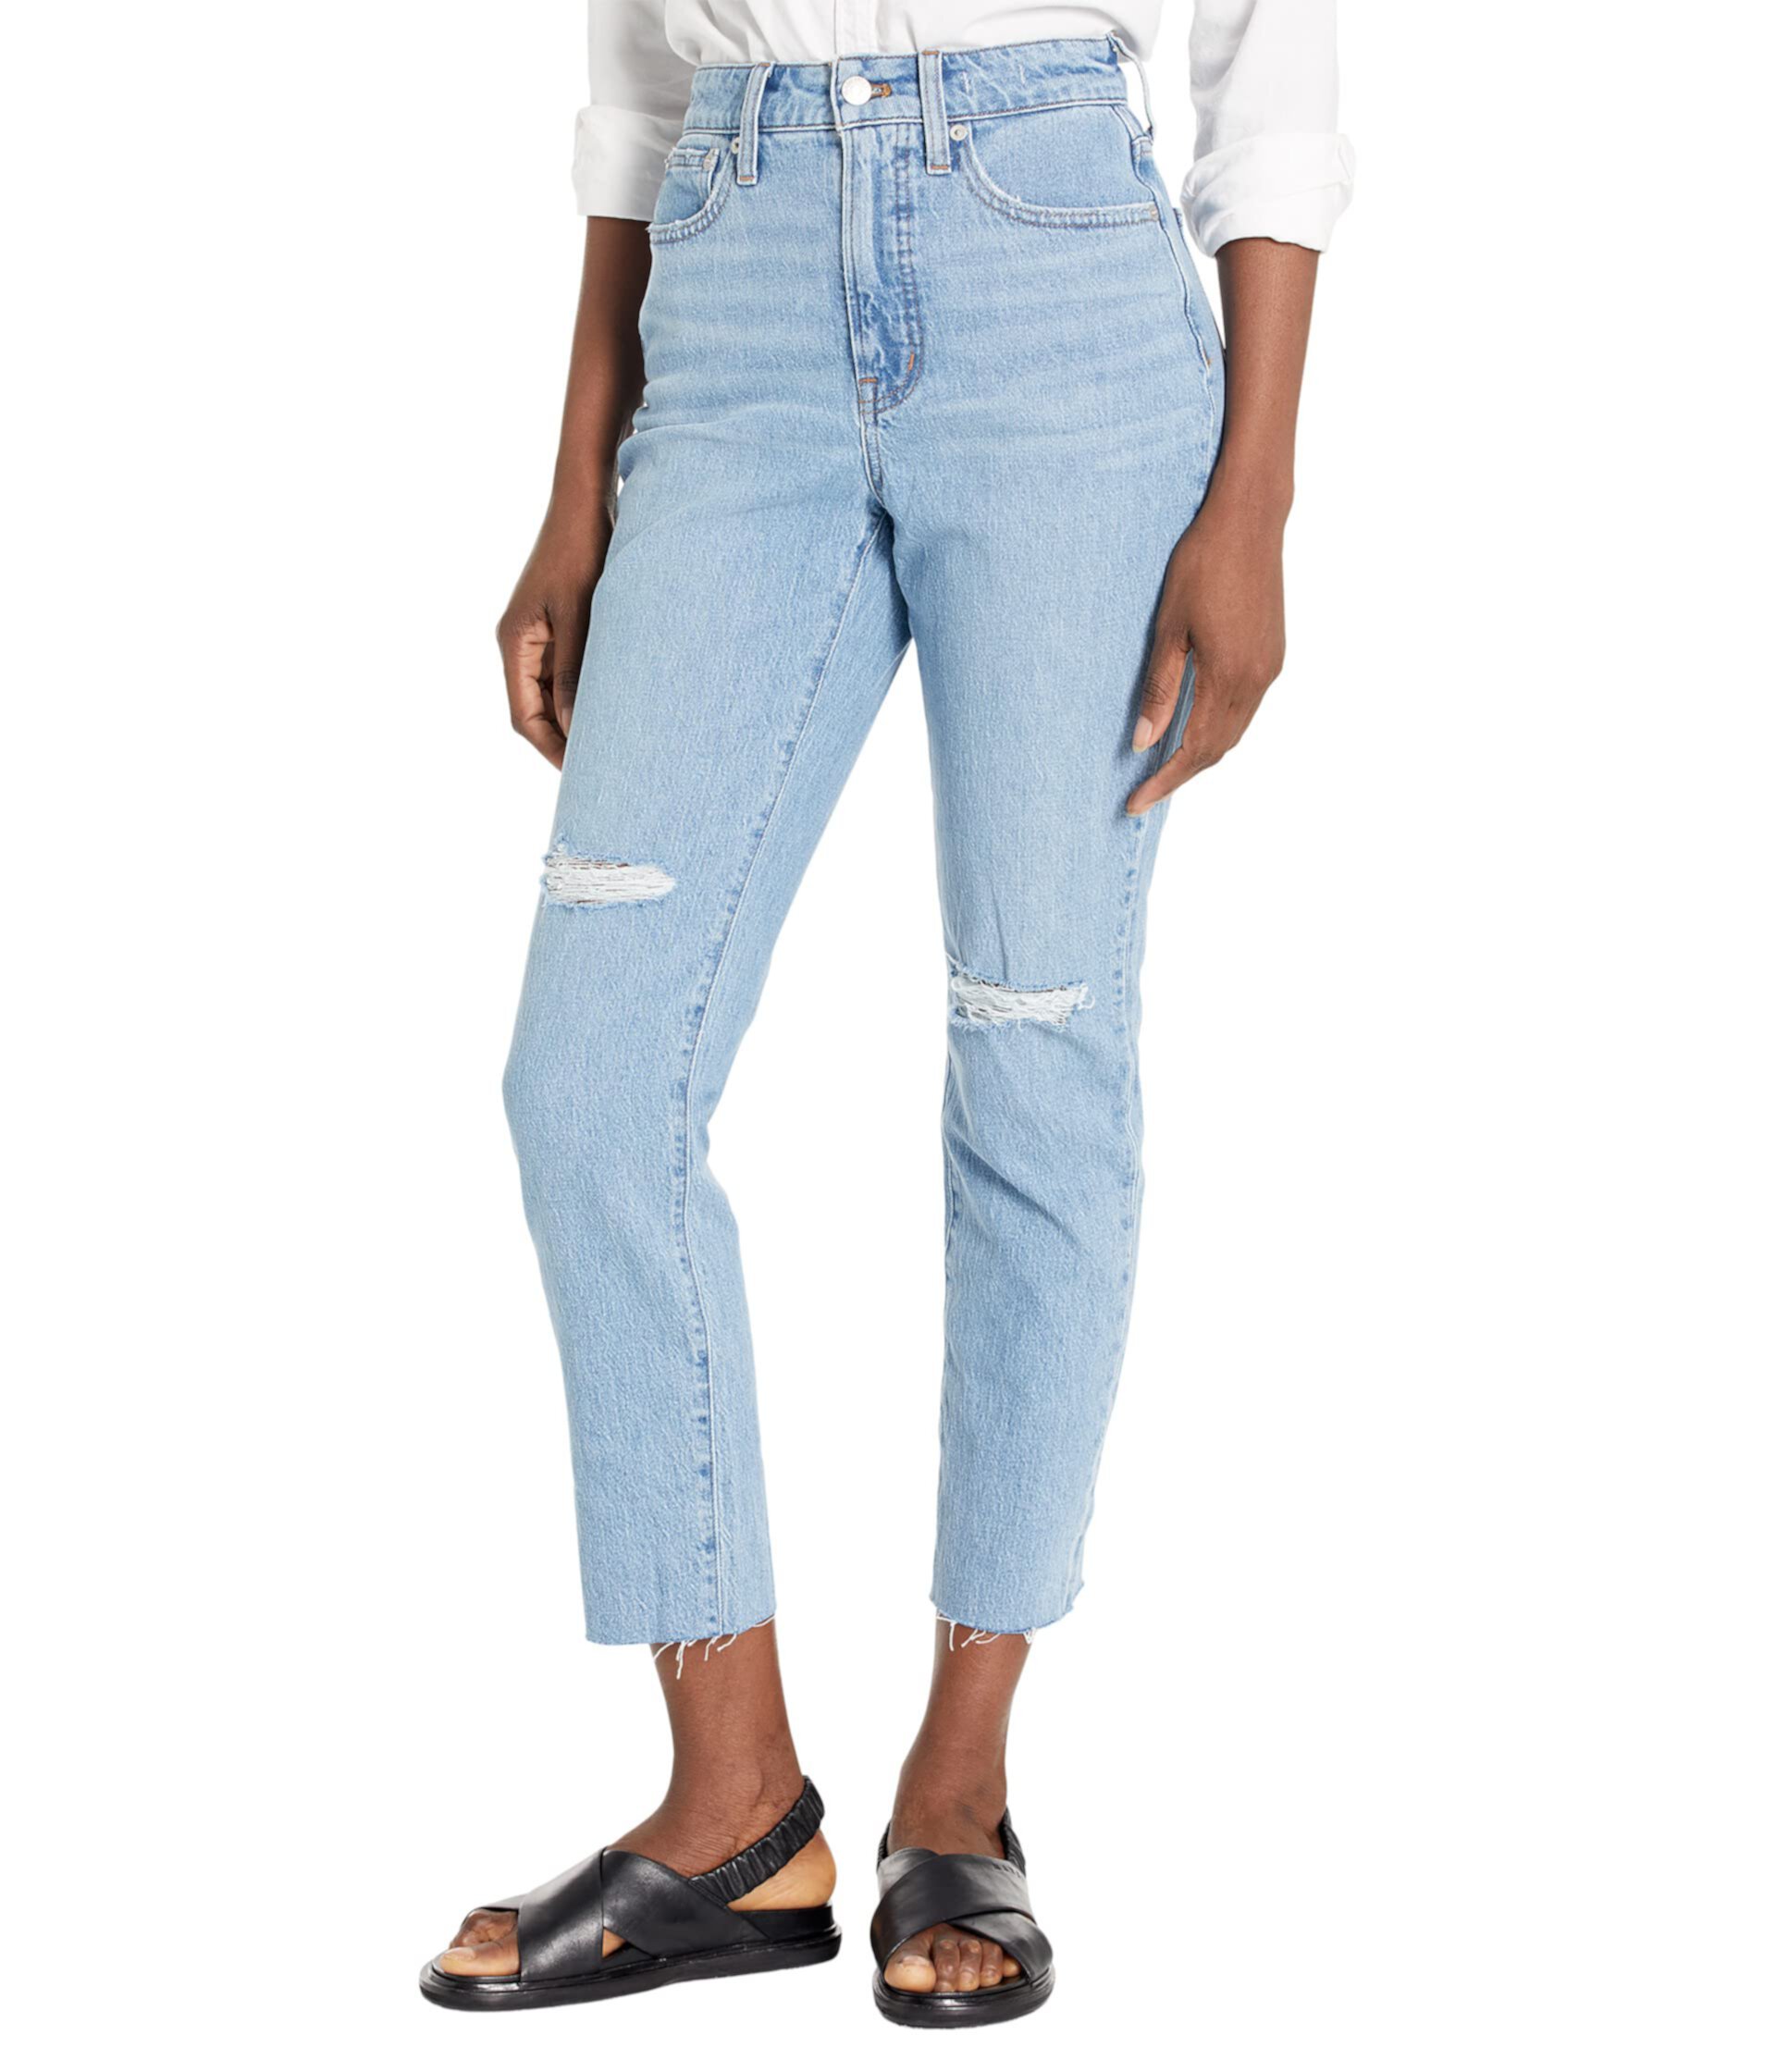 Винтажные джинсы Curvy Perfect с прорехами и необработанным краем в цвете Bradwell Wash Madewell